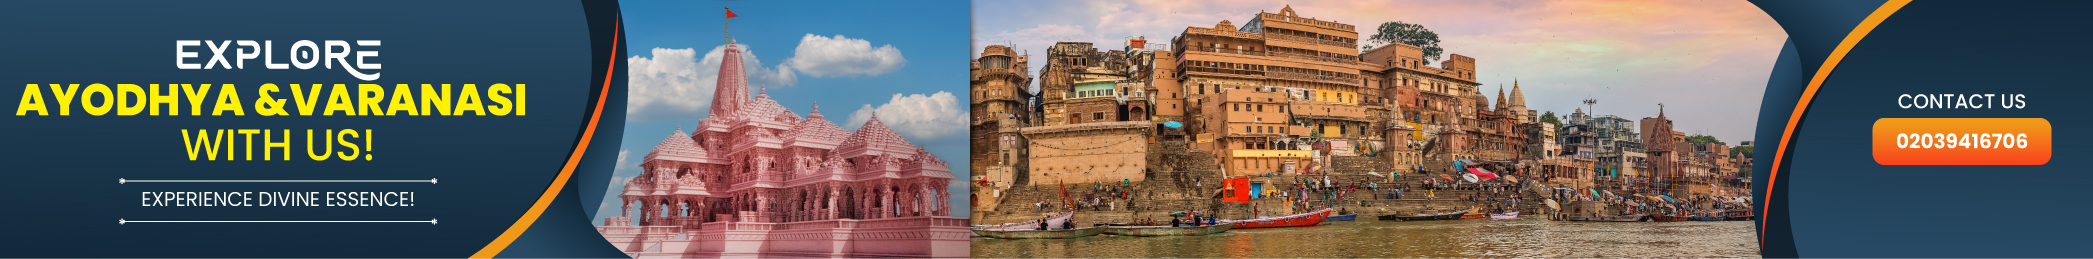 Ayodhya & Varanasi LHR 2